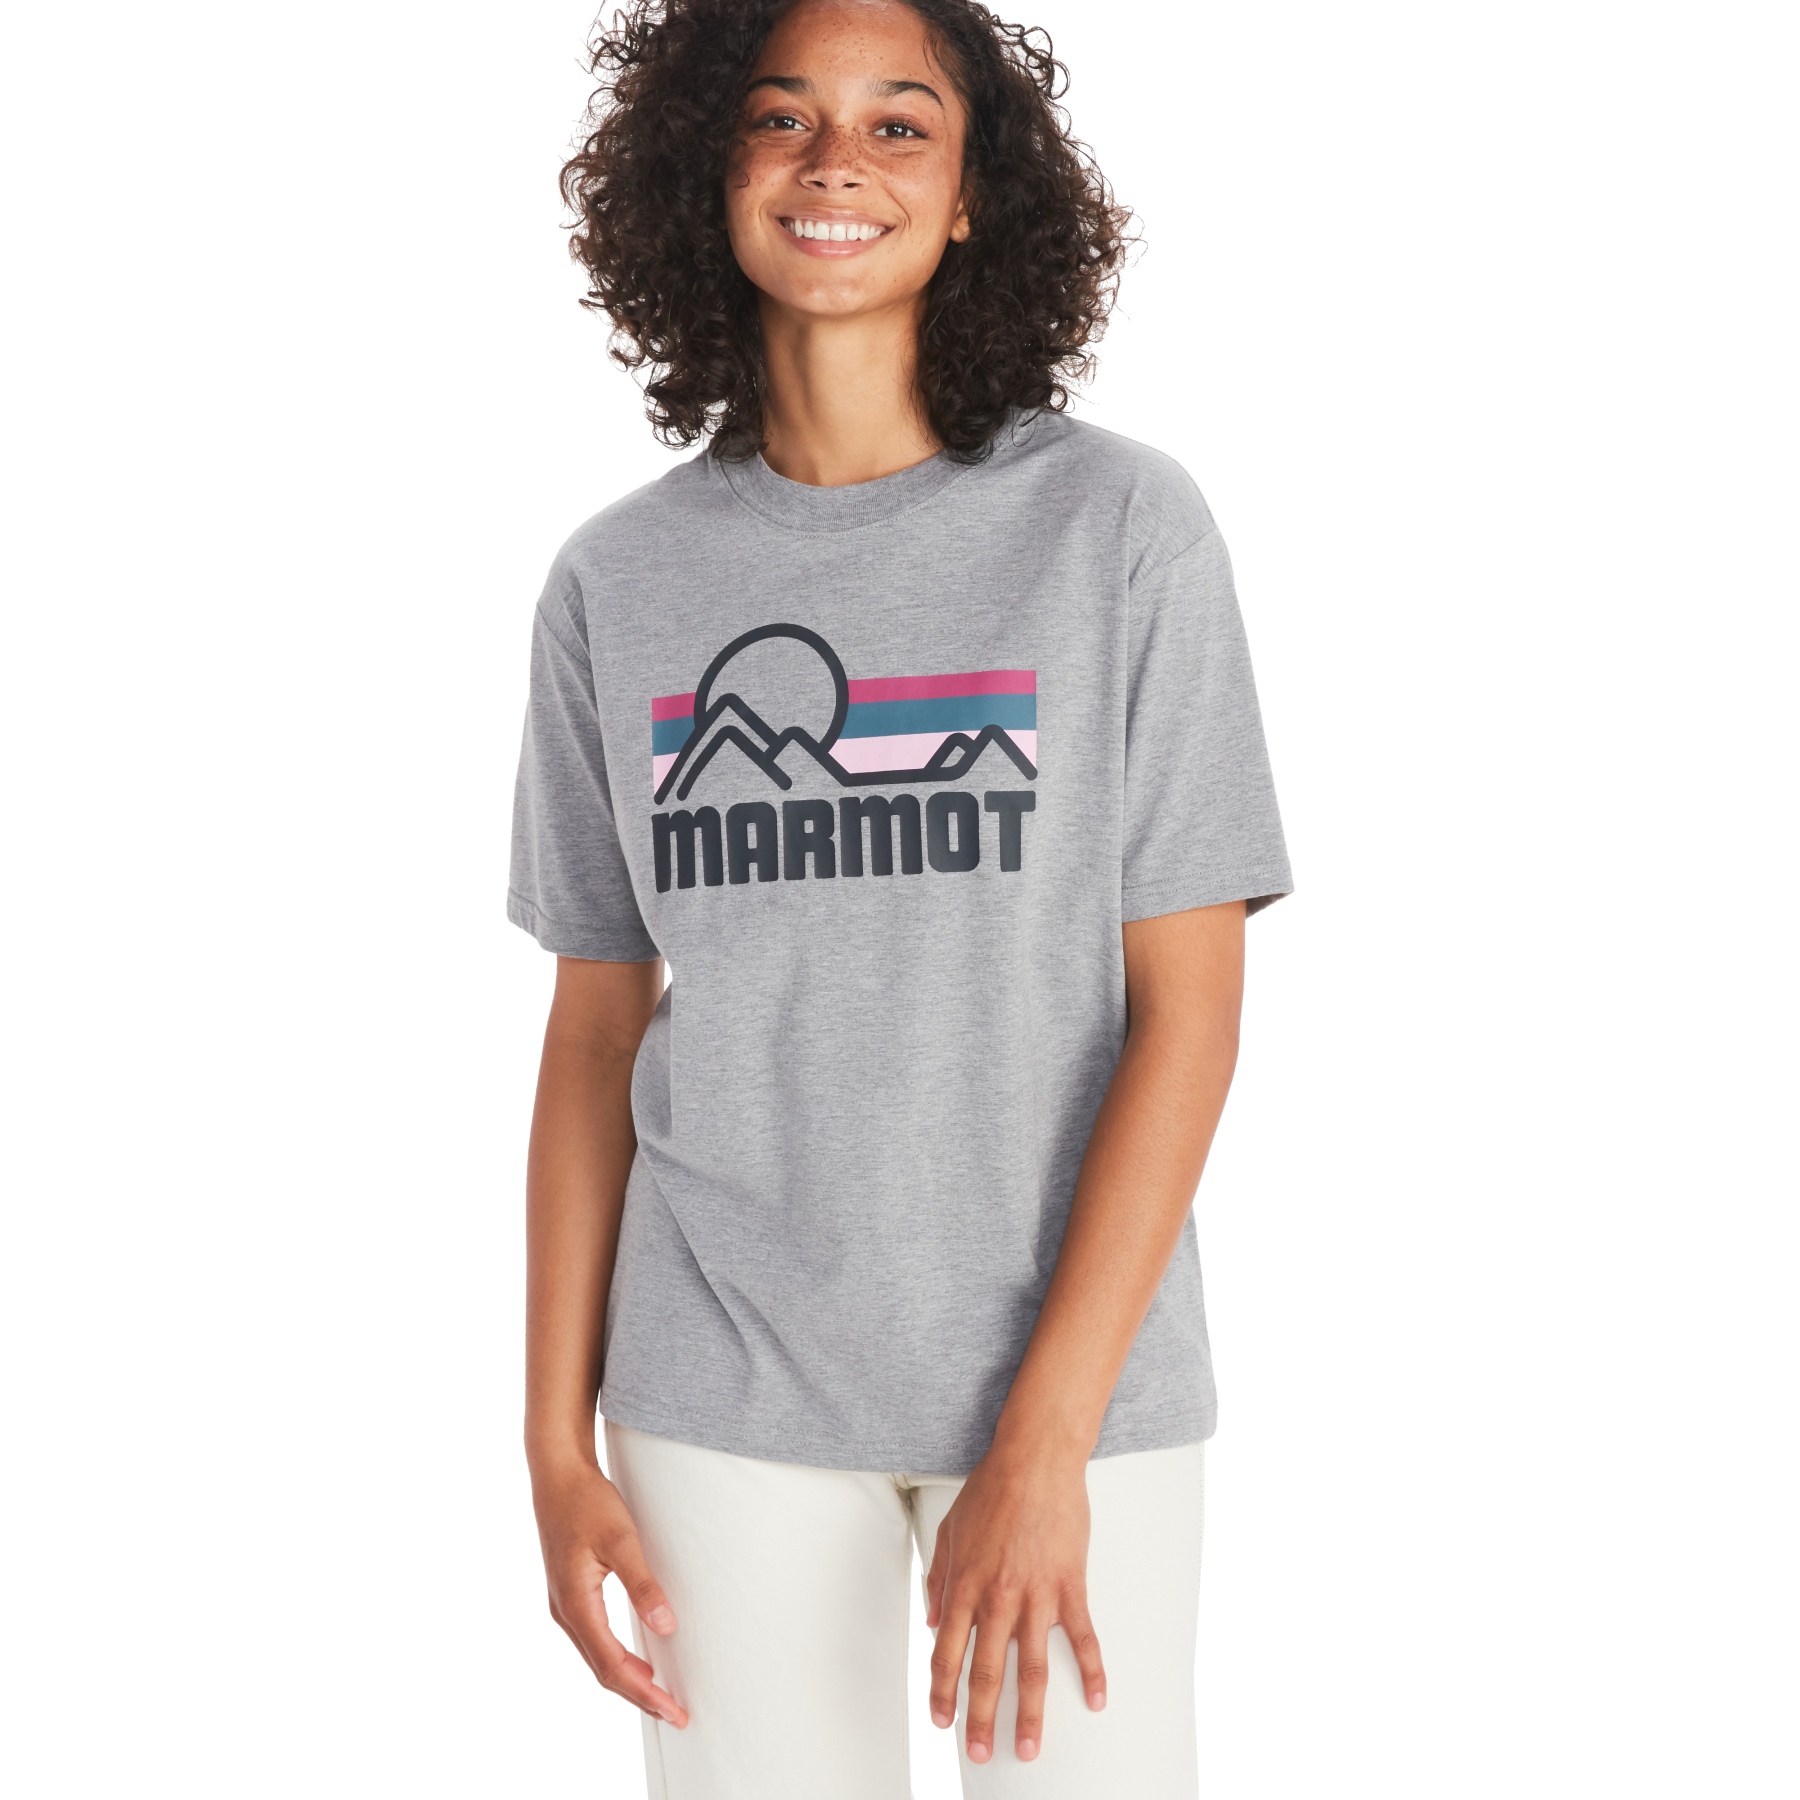 Produktbild von Marmot Coastal T-Shirt Damen - grey heather